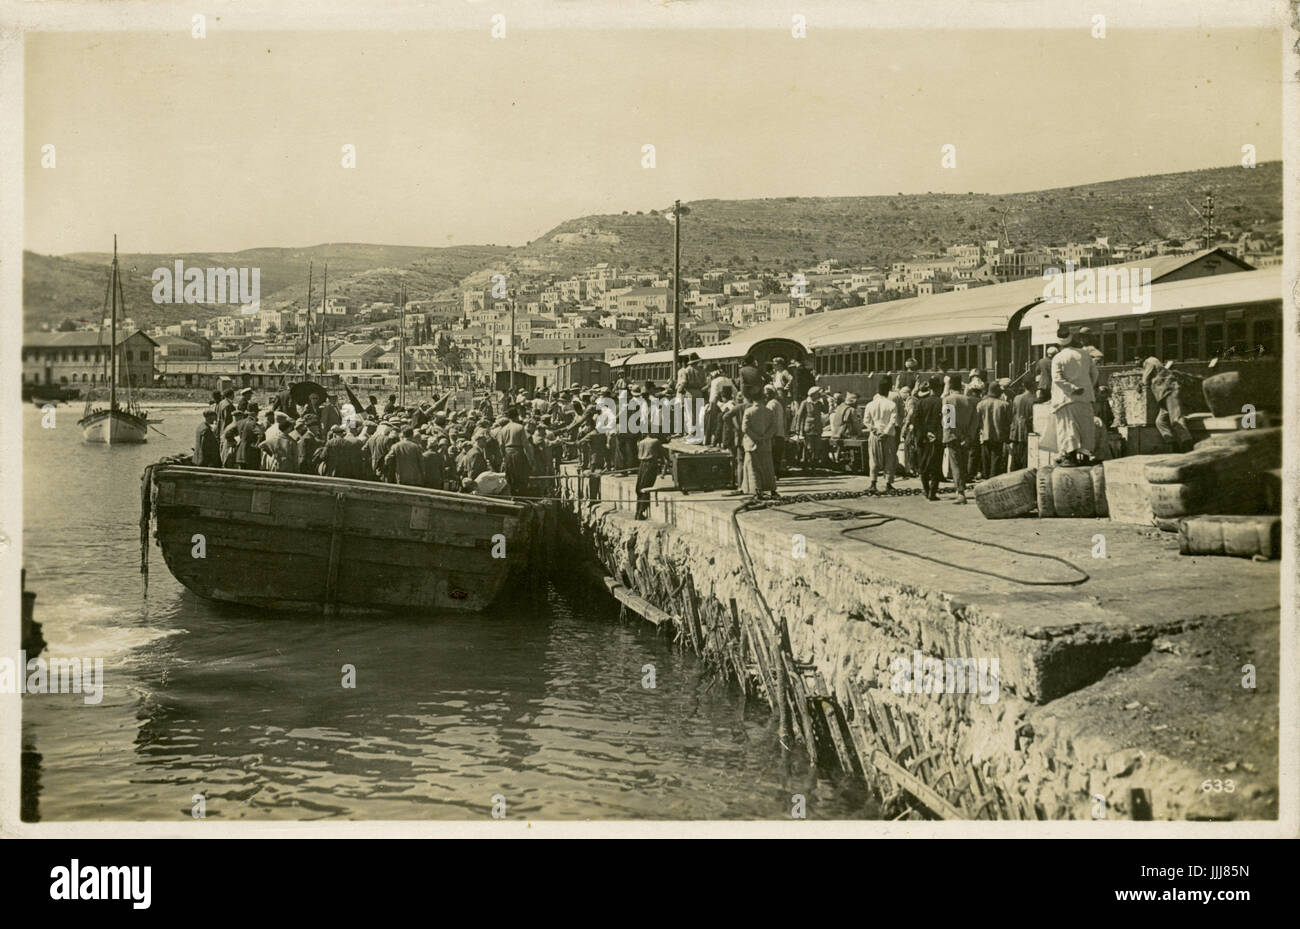 Leute aussteigen bei Haifa Port, Israel, Eisenbahn Zug auf die richtige, 1929. Kann vom großen Schiff stiegen haben? Stockfoto